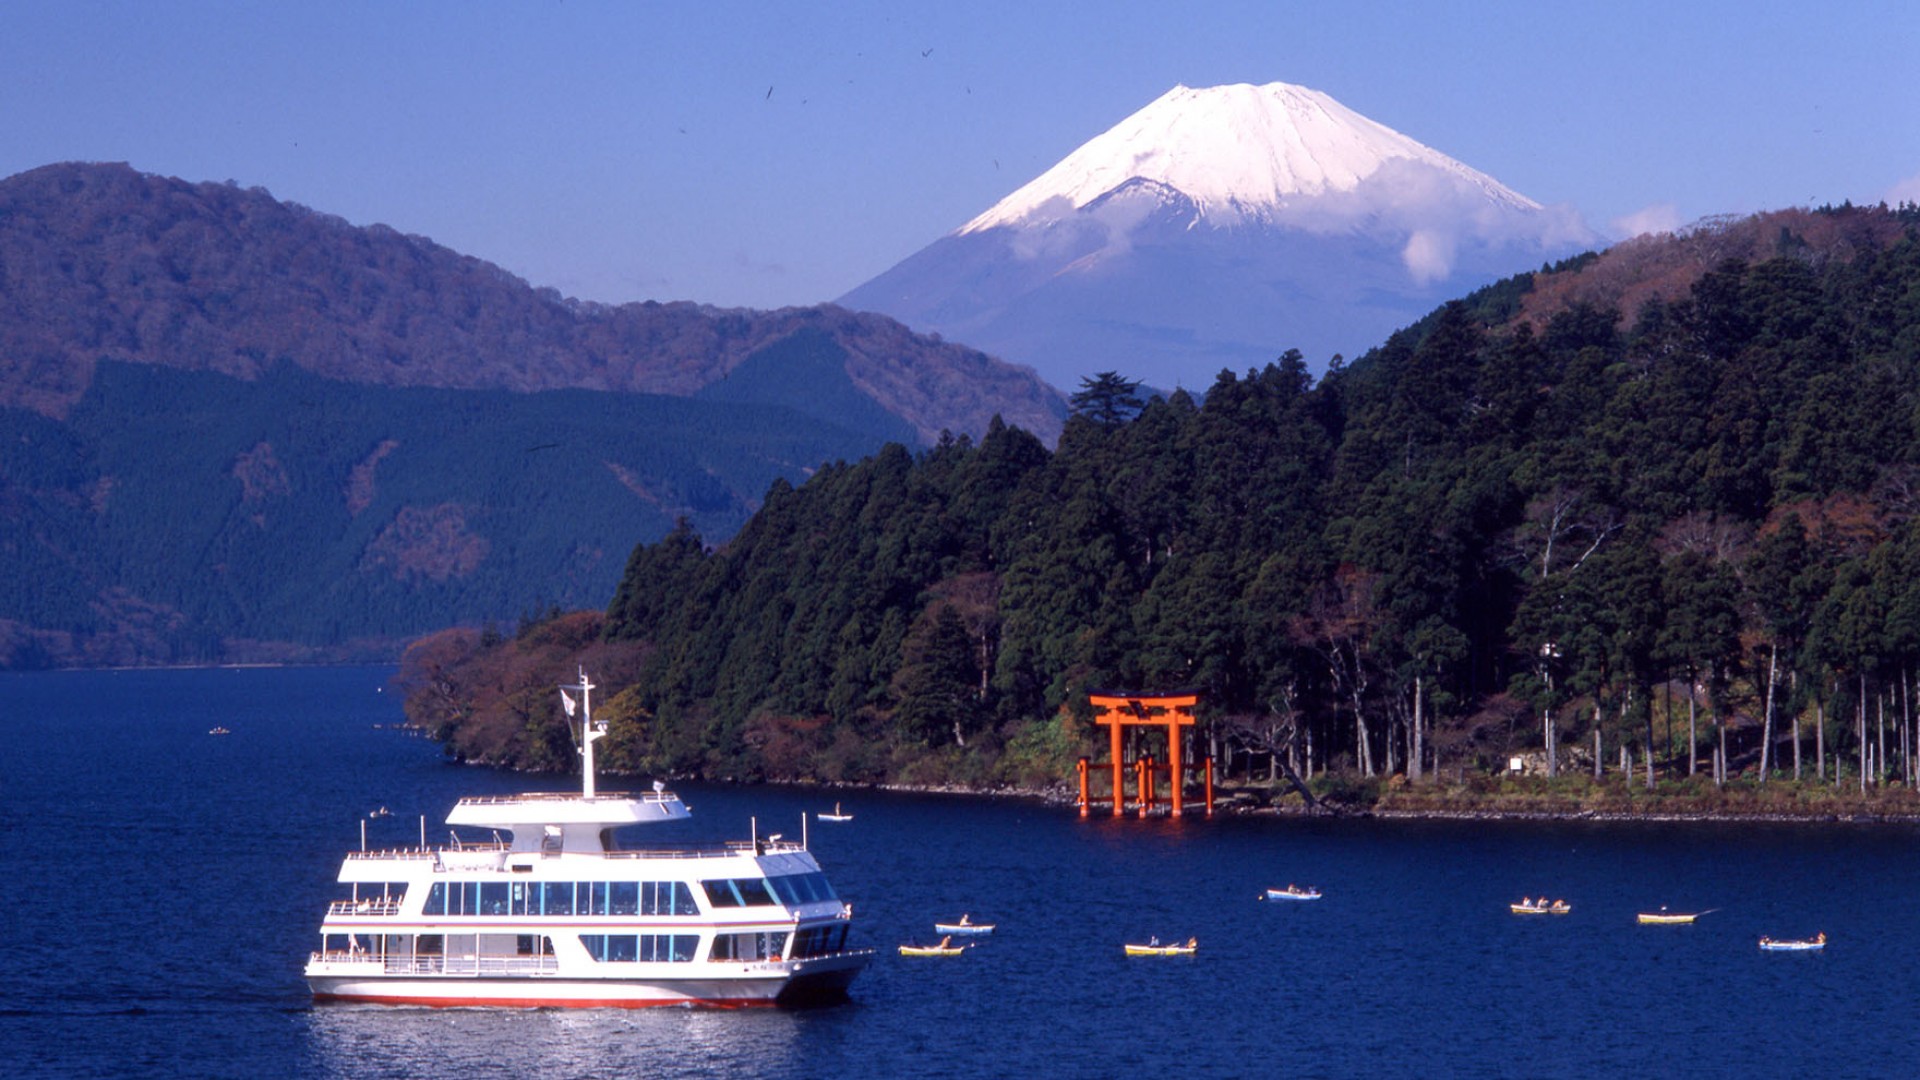 Thuyền Ashinoko ở hồ Hakone